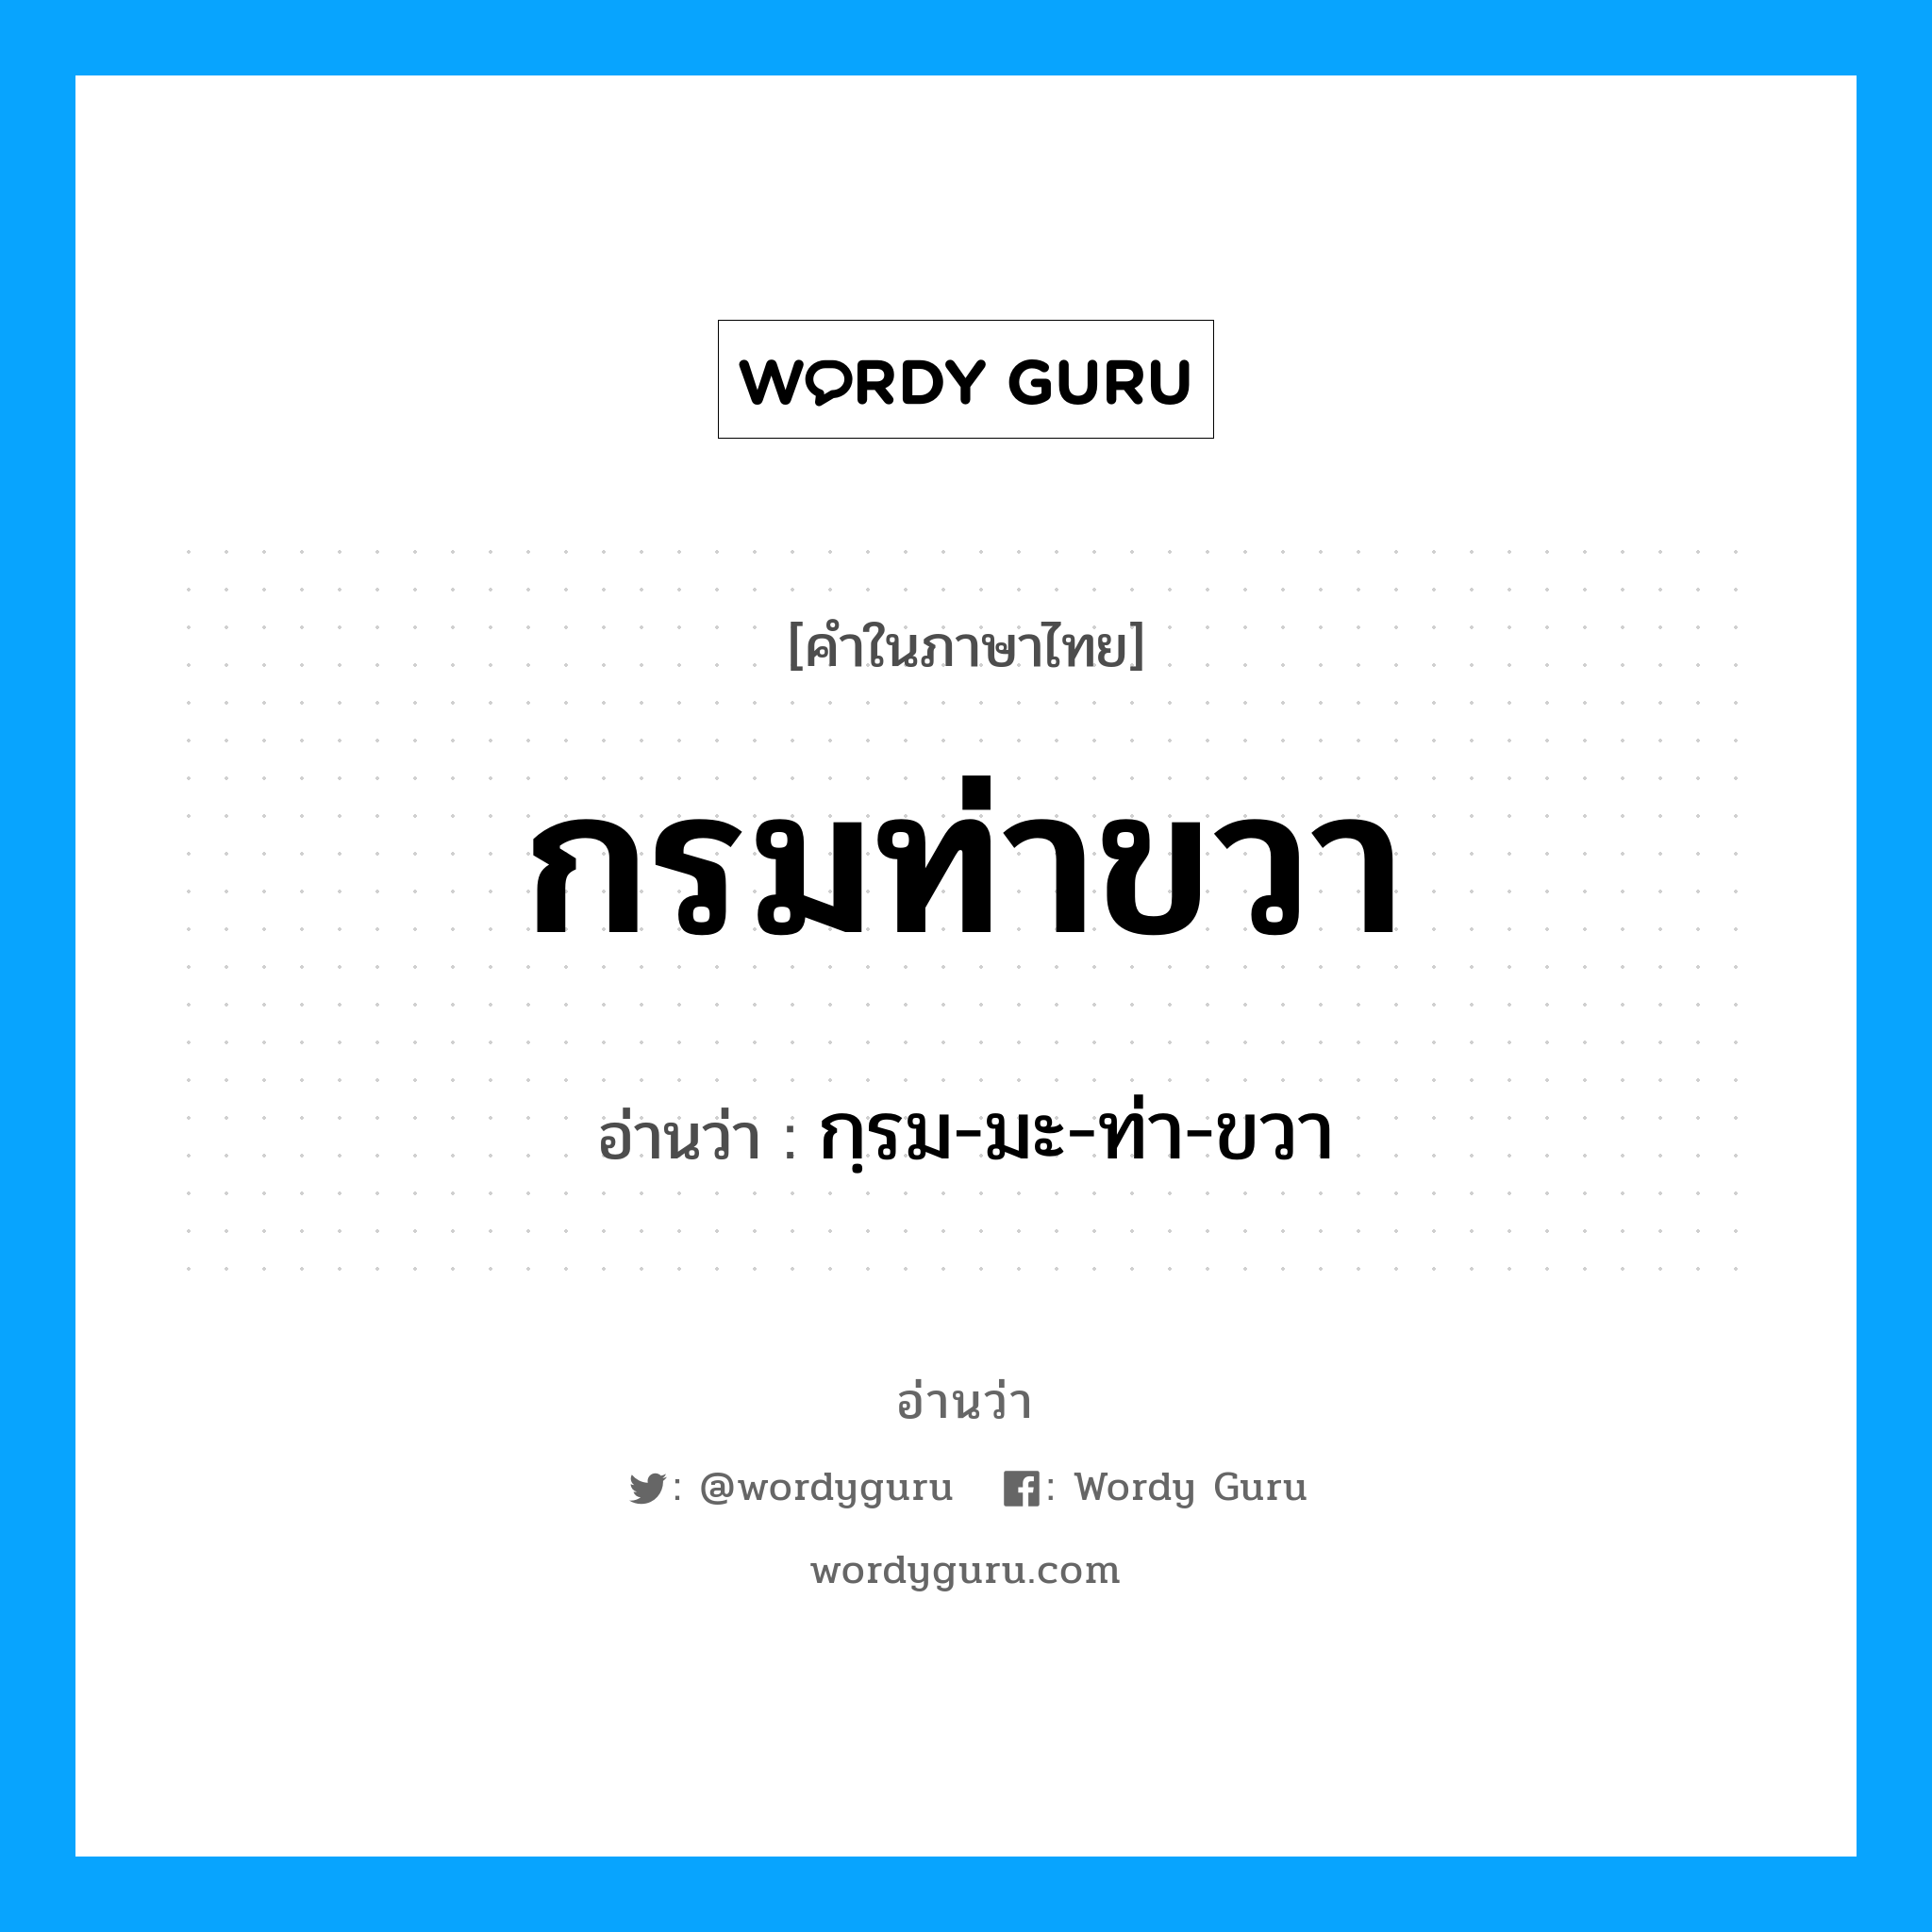 กฺรม-มะ-ท่า-ขวา เป็นคำอ่านของคำไหน?, คำในภาษาไทย กฺรม-มะ-ท่า-ขวา อ่านว่า กรมท่าขวา